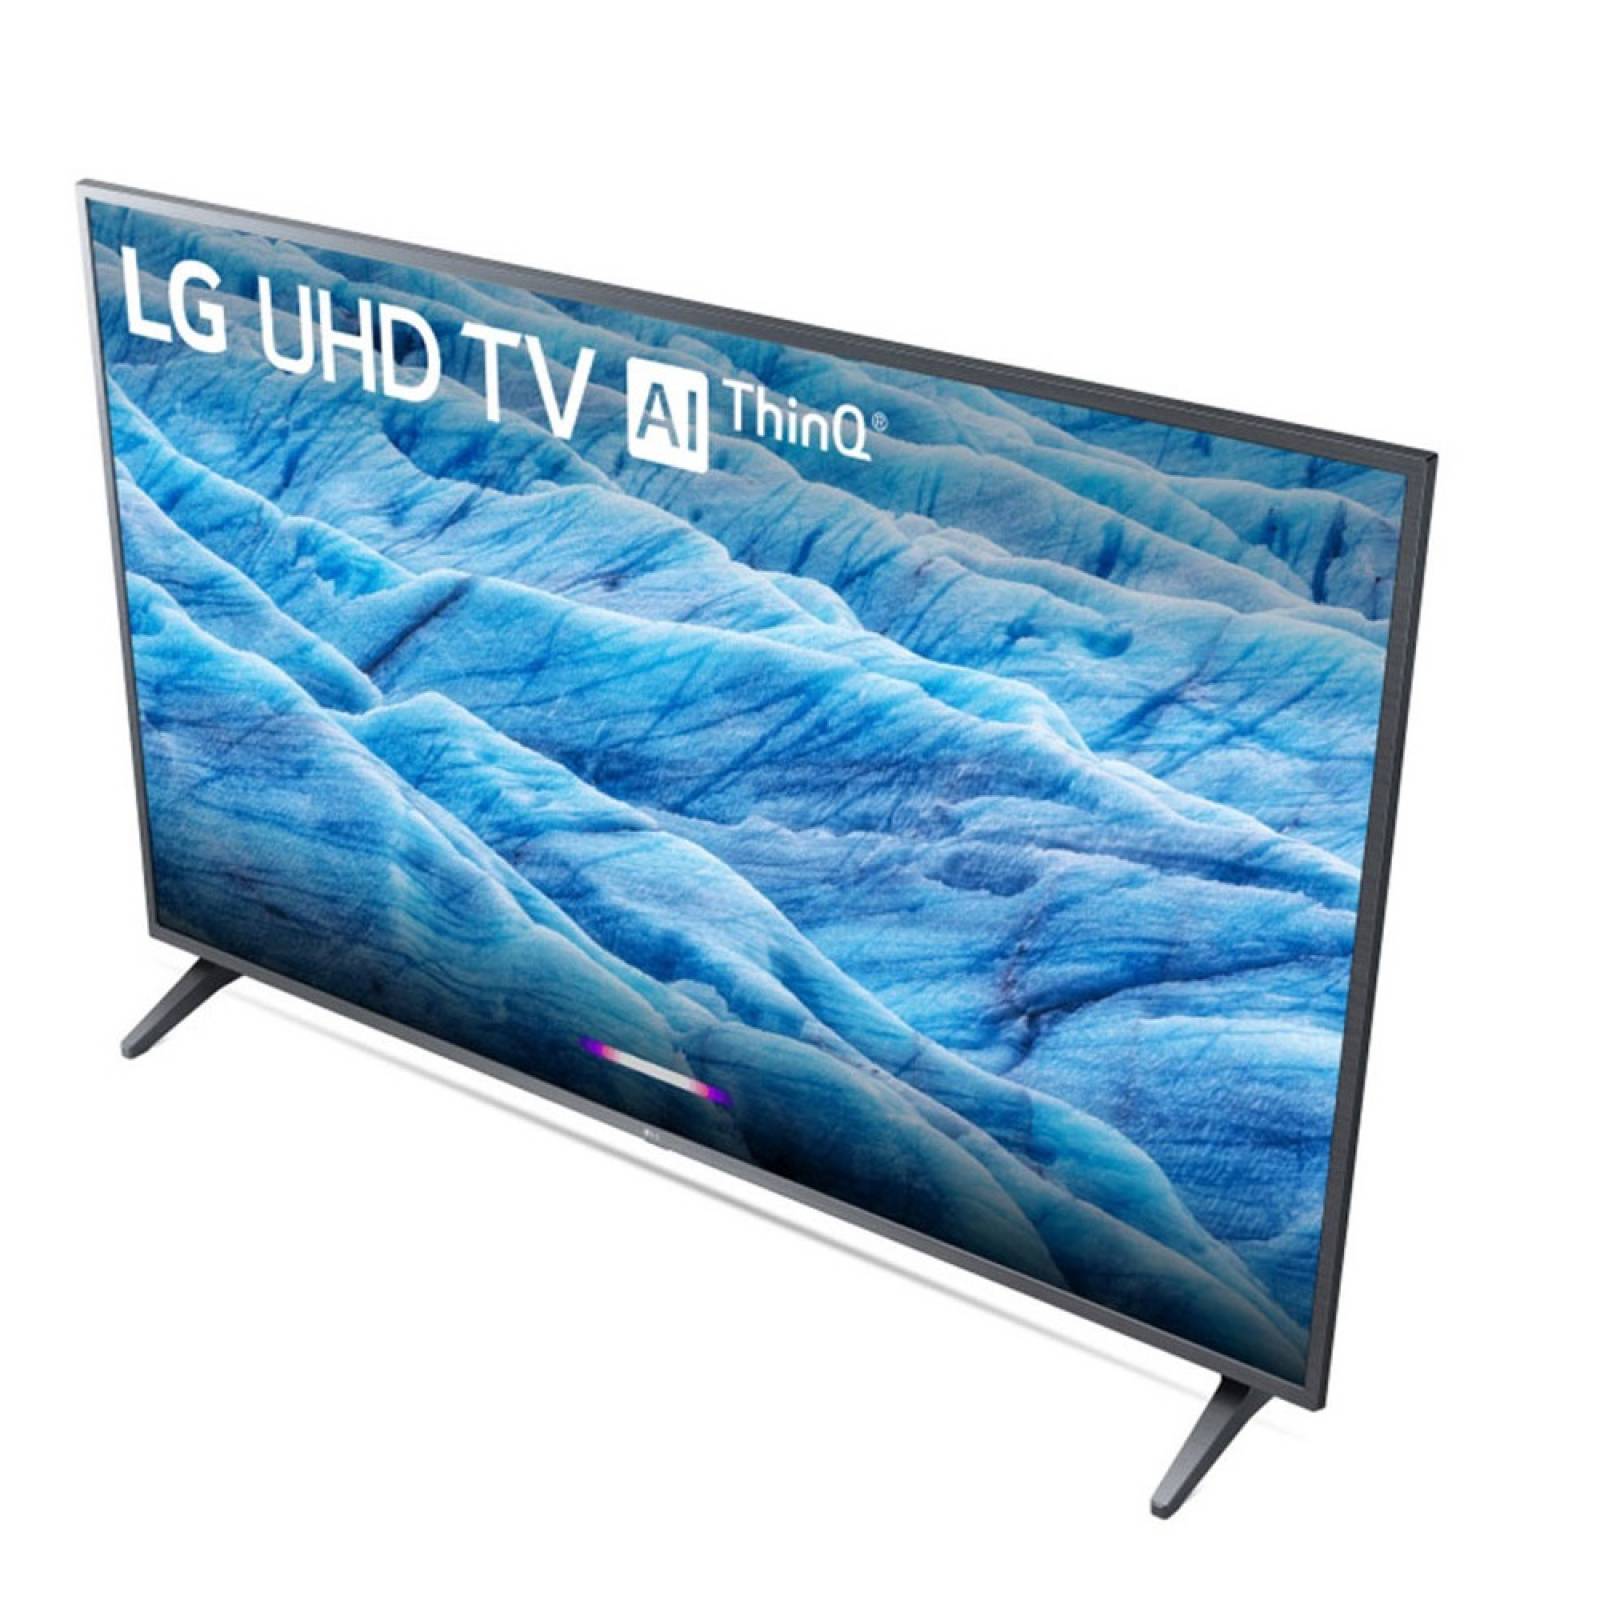 Smart TV LG 55 4K UHD HDR IPS LG ThinQ Al 55UM7300AUE - Reacondicionado